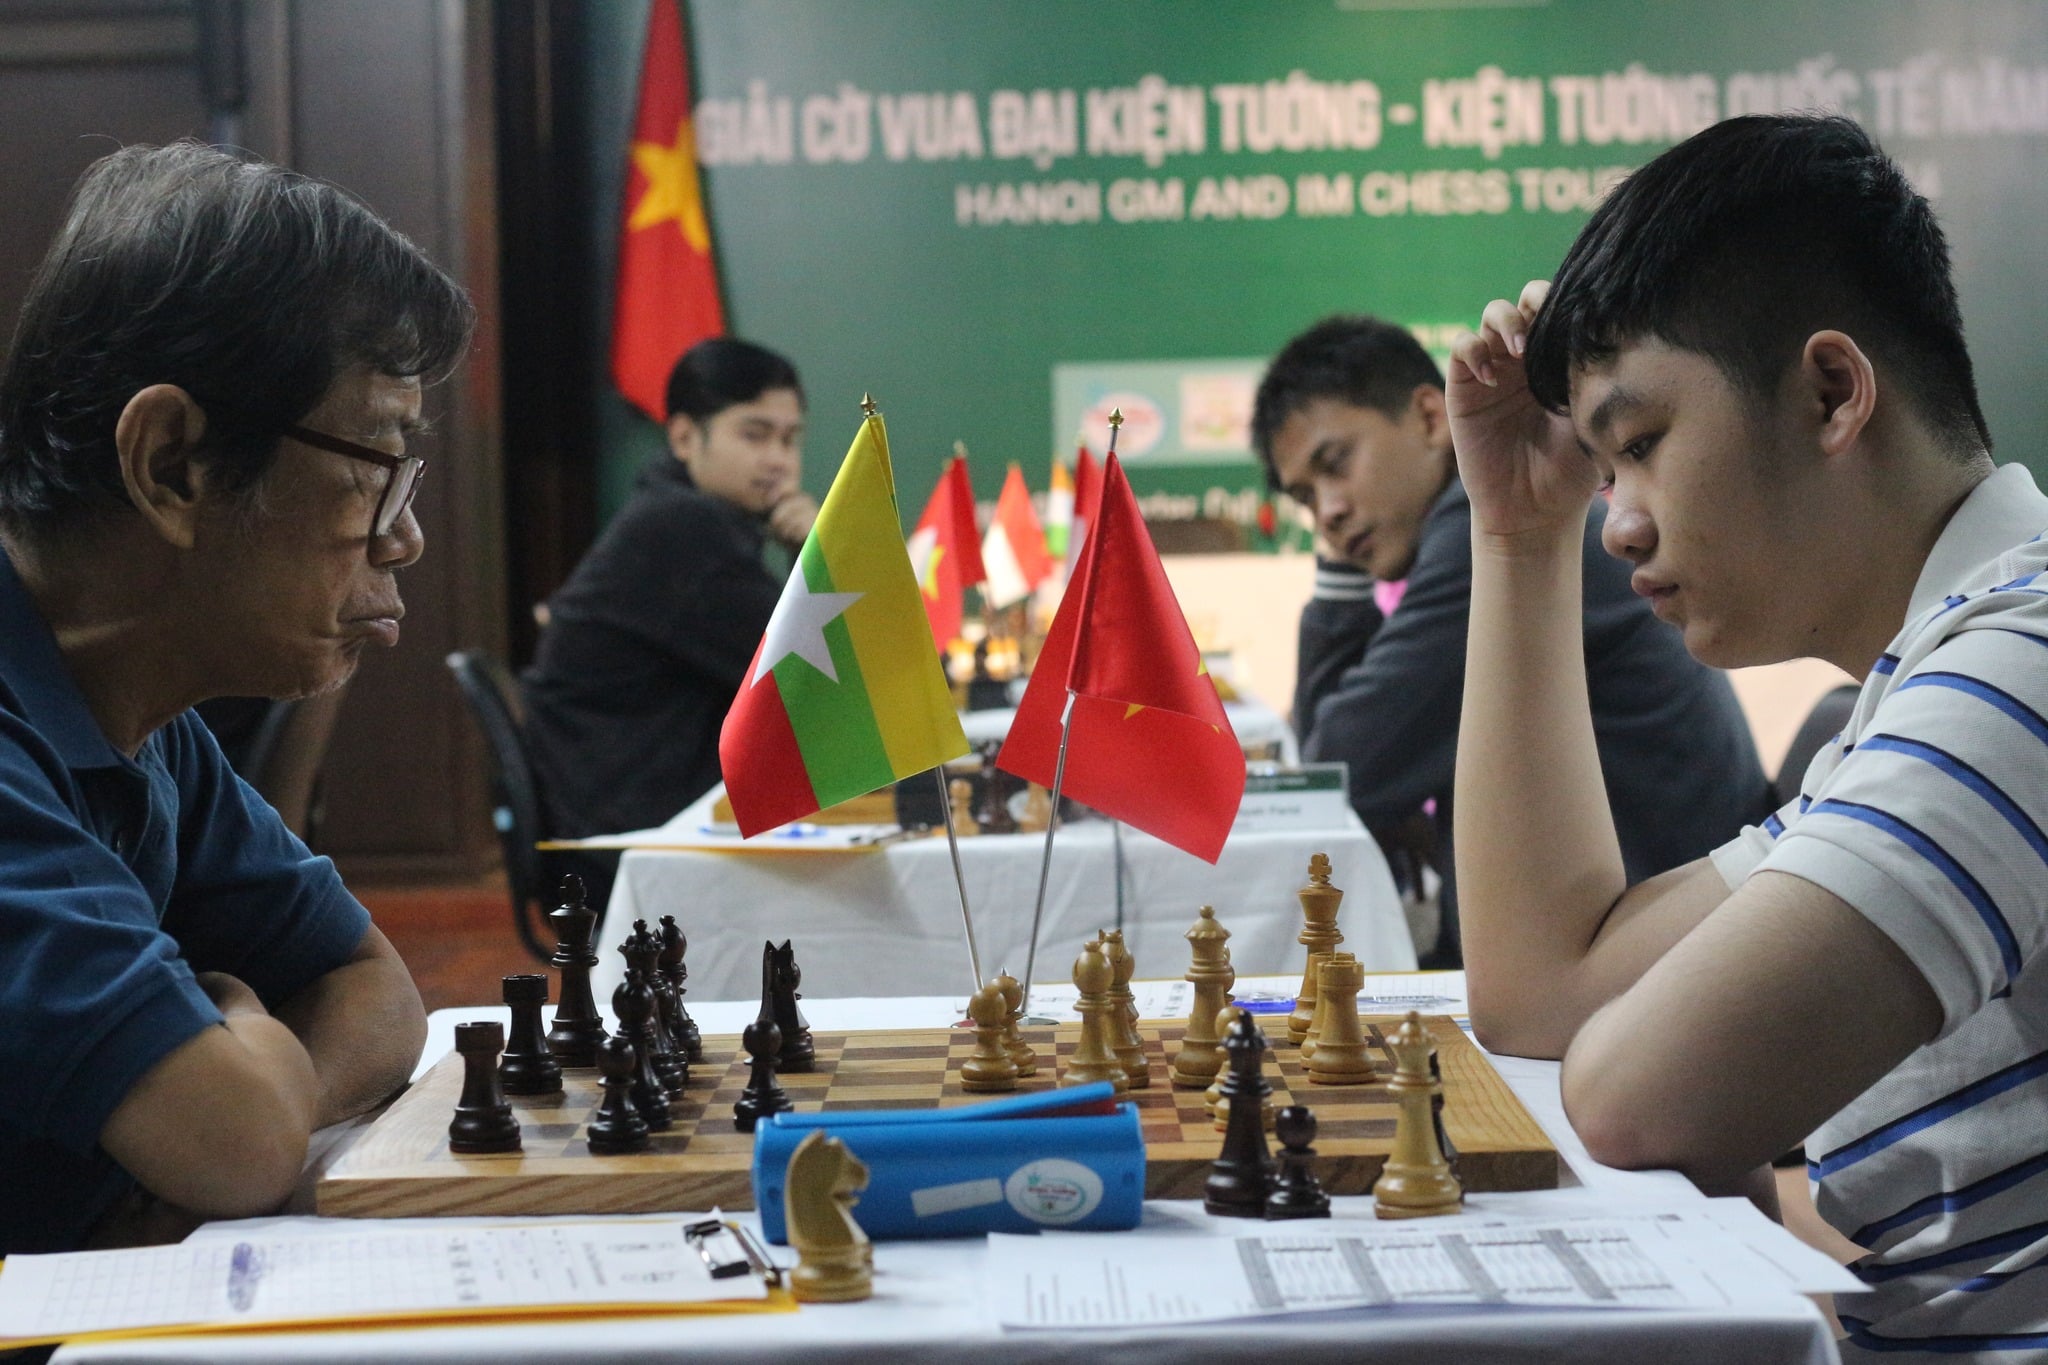 Kỳ thủ Trần Tuấn Minh vô địch giải cờ vua quốc tế tại Hà Nội - Ảnh 2.